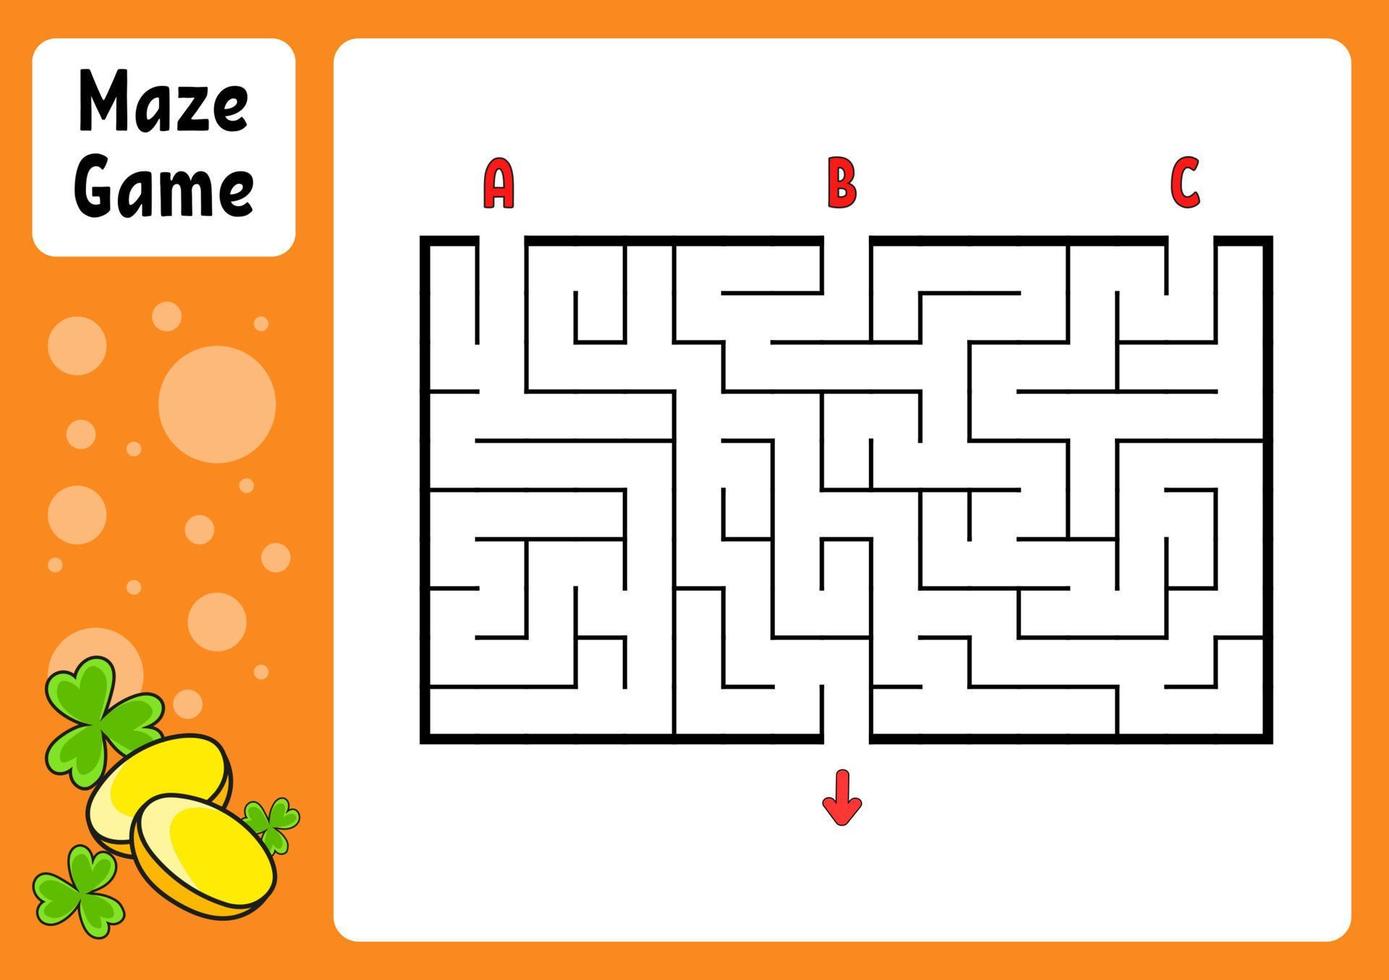 https://static.vecteezy.com/ti/vecteur-libre/p1/6847860-rectangle-labyrinthe-jeu-pour-les-enfants-trois-entrees-une-sortie-education-feuille-de-travail-puzzle-pour-enfants-labyrinthe-enigme-couleur-illustrationle-trouver-le-bon-chemin-personnage-de-dessin-anime-vectoriel.jpg